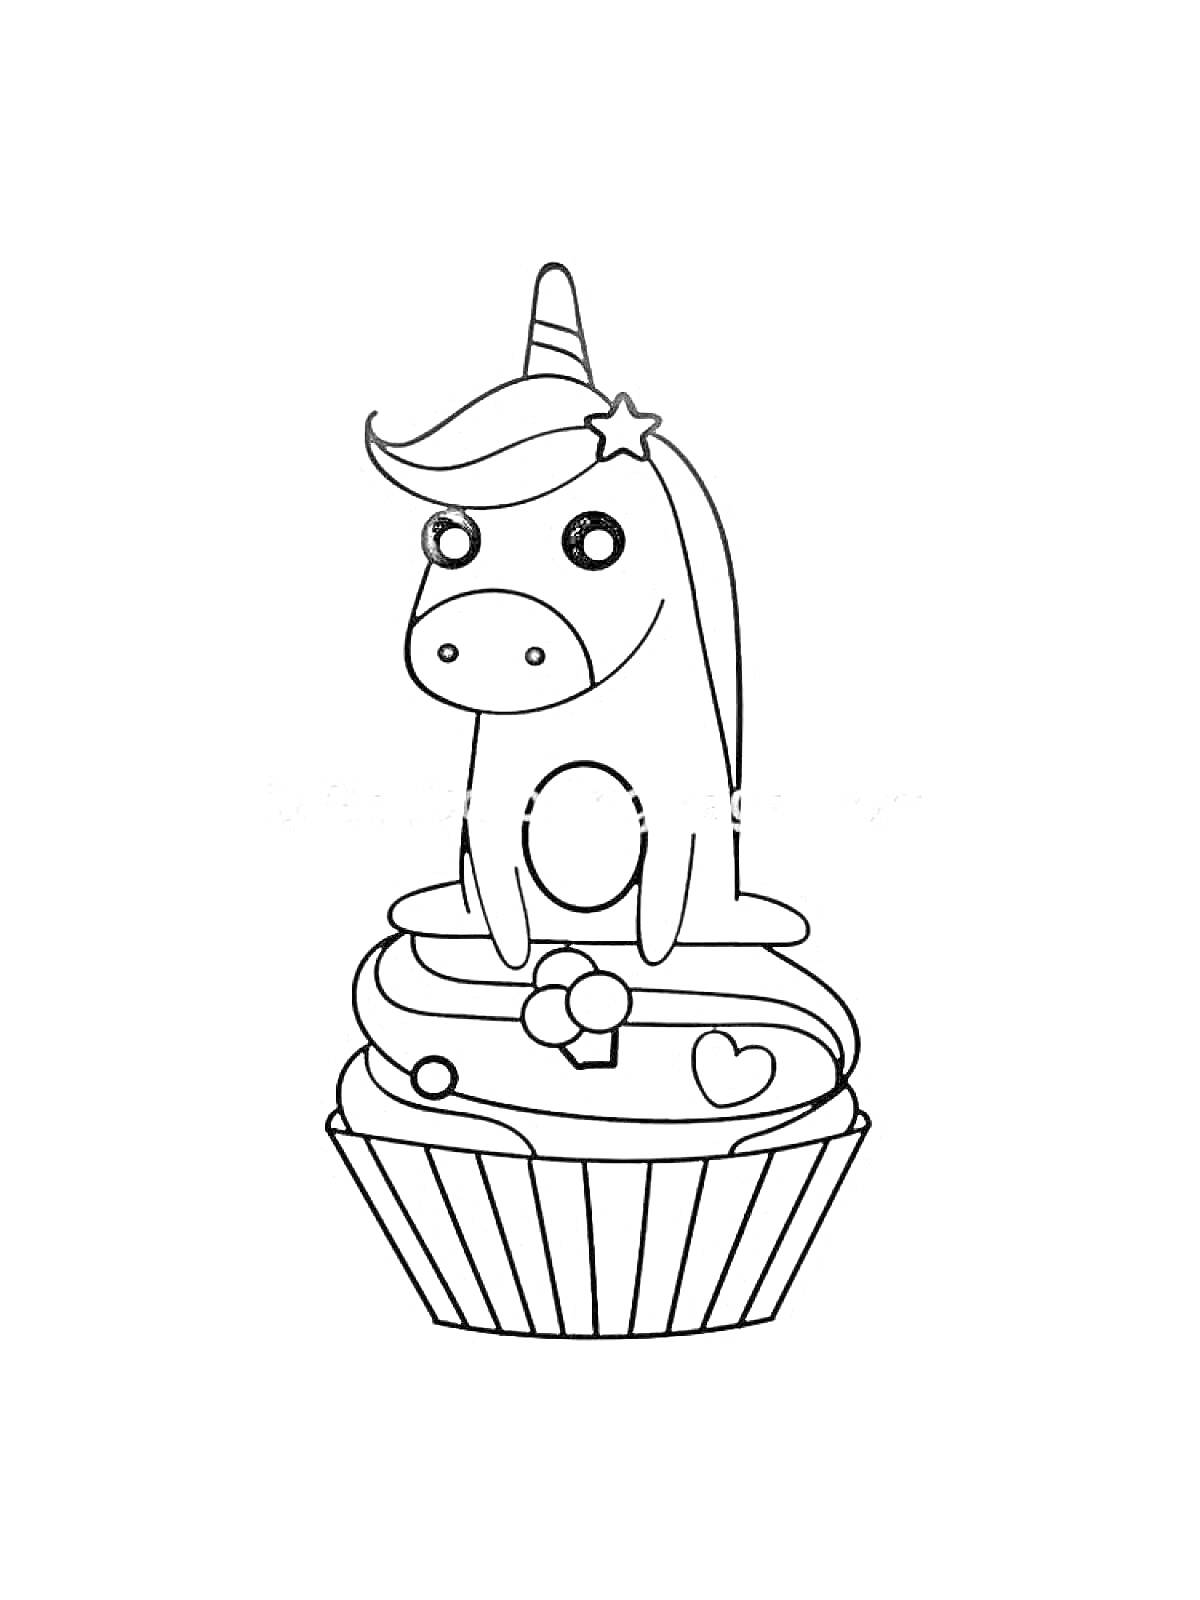 Раскраска Единорог на кексе с сердечком, цветком и бантиком